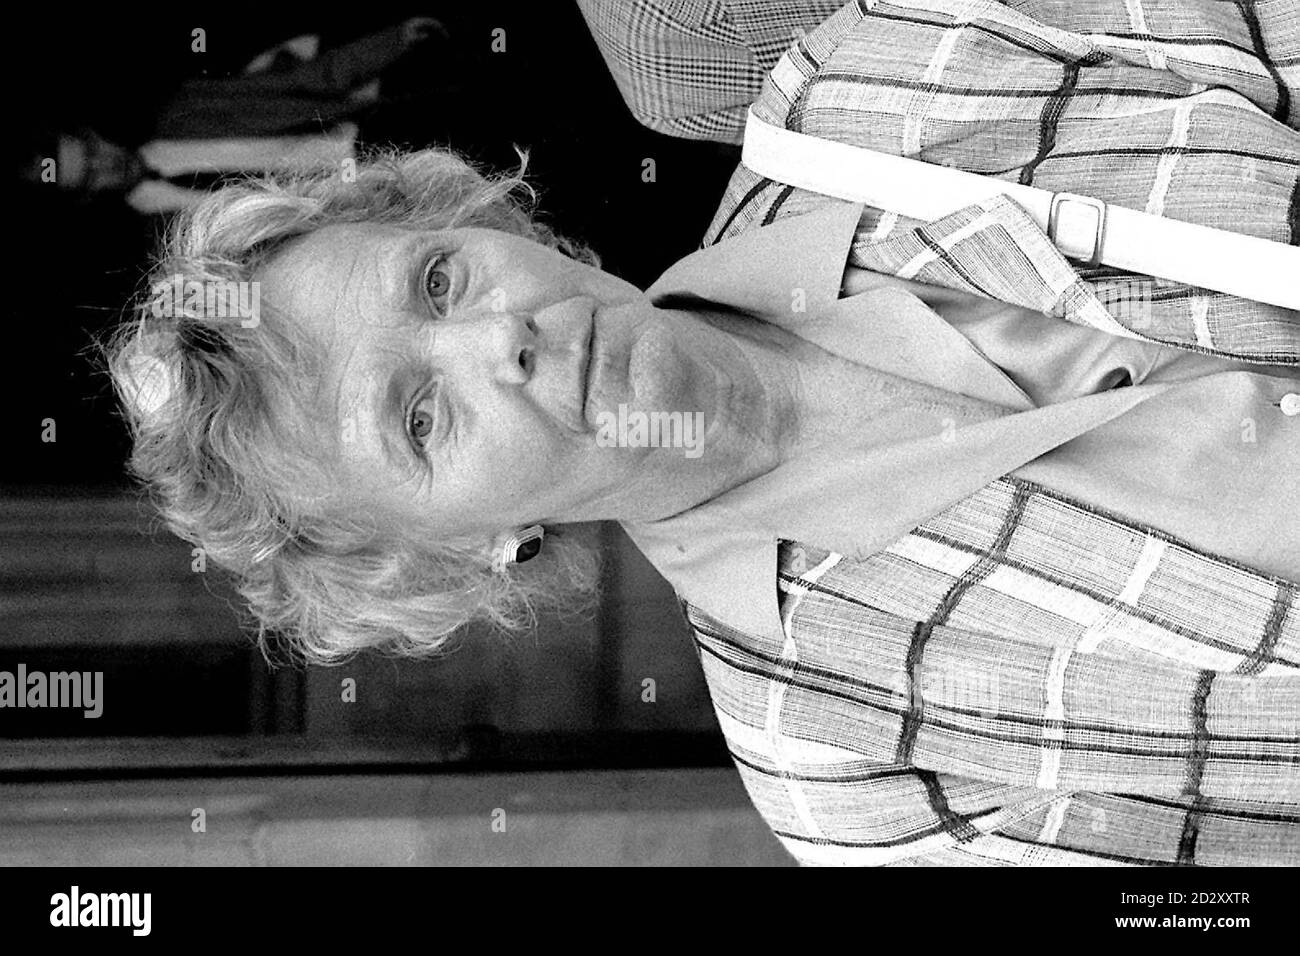 Foto de la biblioteca de PA fechada en 13.6.89 : PA Filer fechada en 3.2.87 la creadora de Eastenders Julia Smith. Julia Smith, co-creadora de EastEnders, murió hoy, anunció la BBC. La mujer conocida por el elenco como la madrina murió esta mañana en el Hospital Royal Marsden. Ver Historia de PA MUERTE Eastenders. Fotos de PA. (DISPONIBLE SOLO EN BLANCO Y NEGRO) Foto de stock